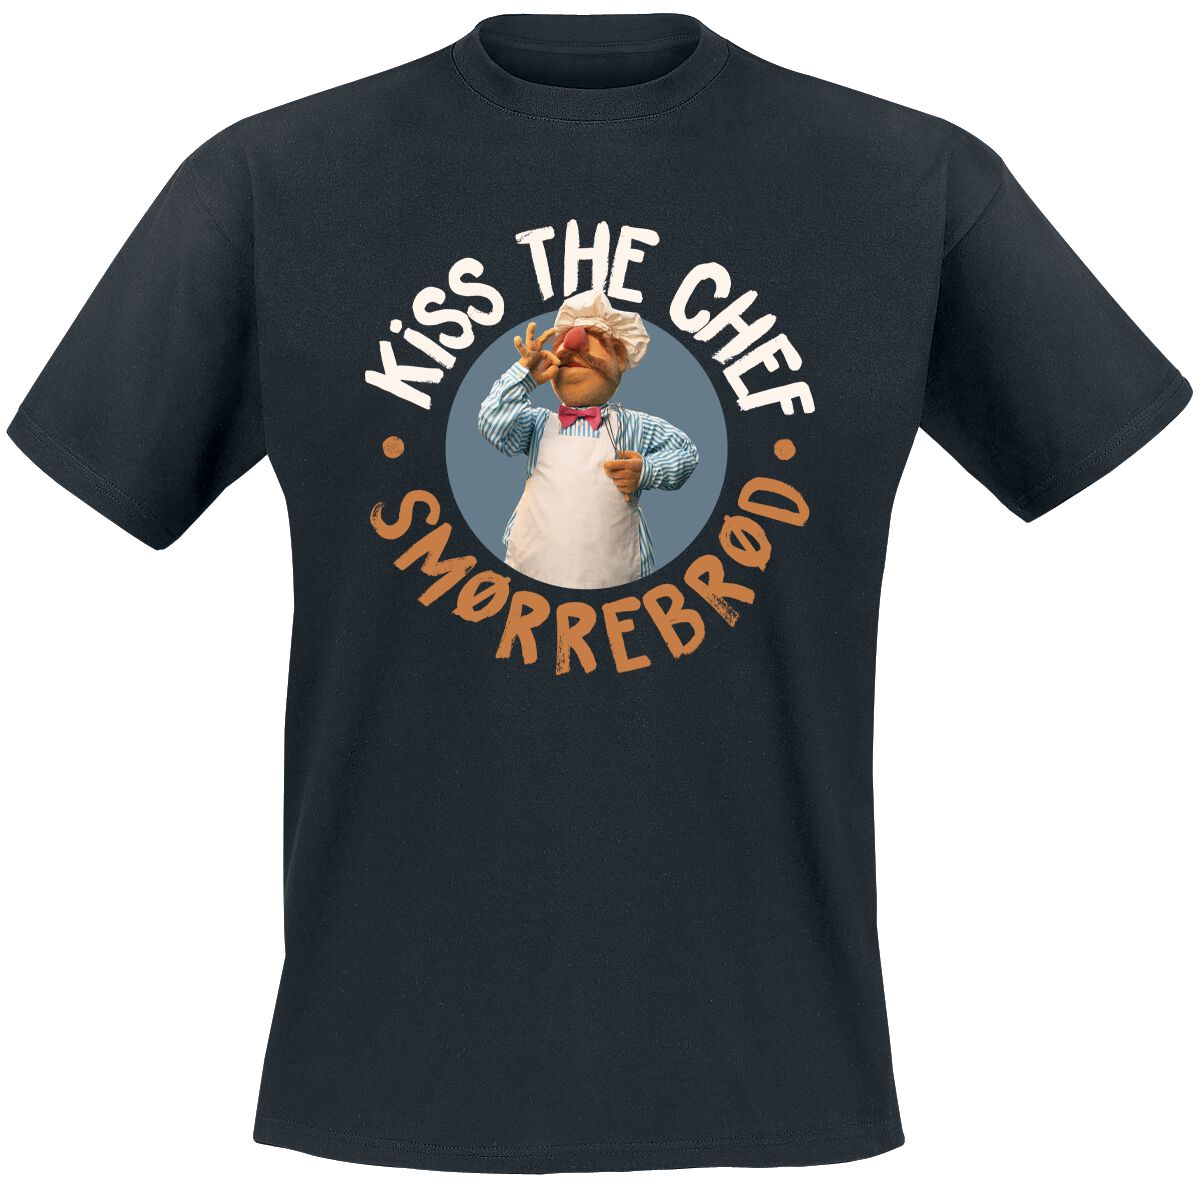 Die Muppets T-Shirt - Kiss The Chef - Smorrebrod - M bis 5XL - für Männer - Größe M - schwarz  - Lizenzierter Fanartikel